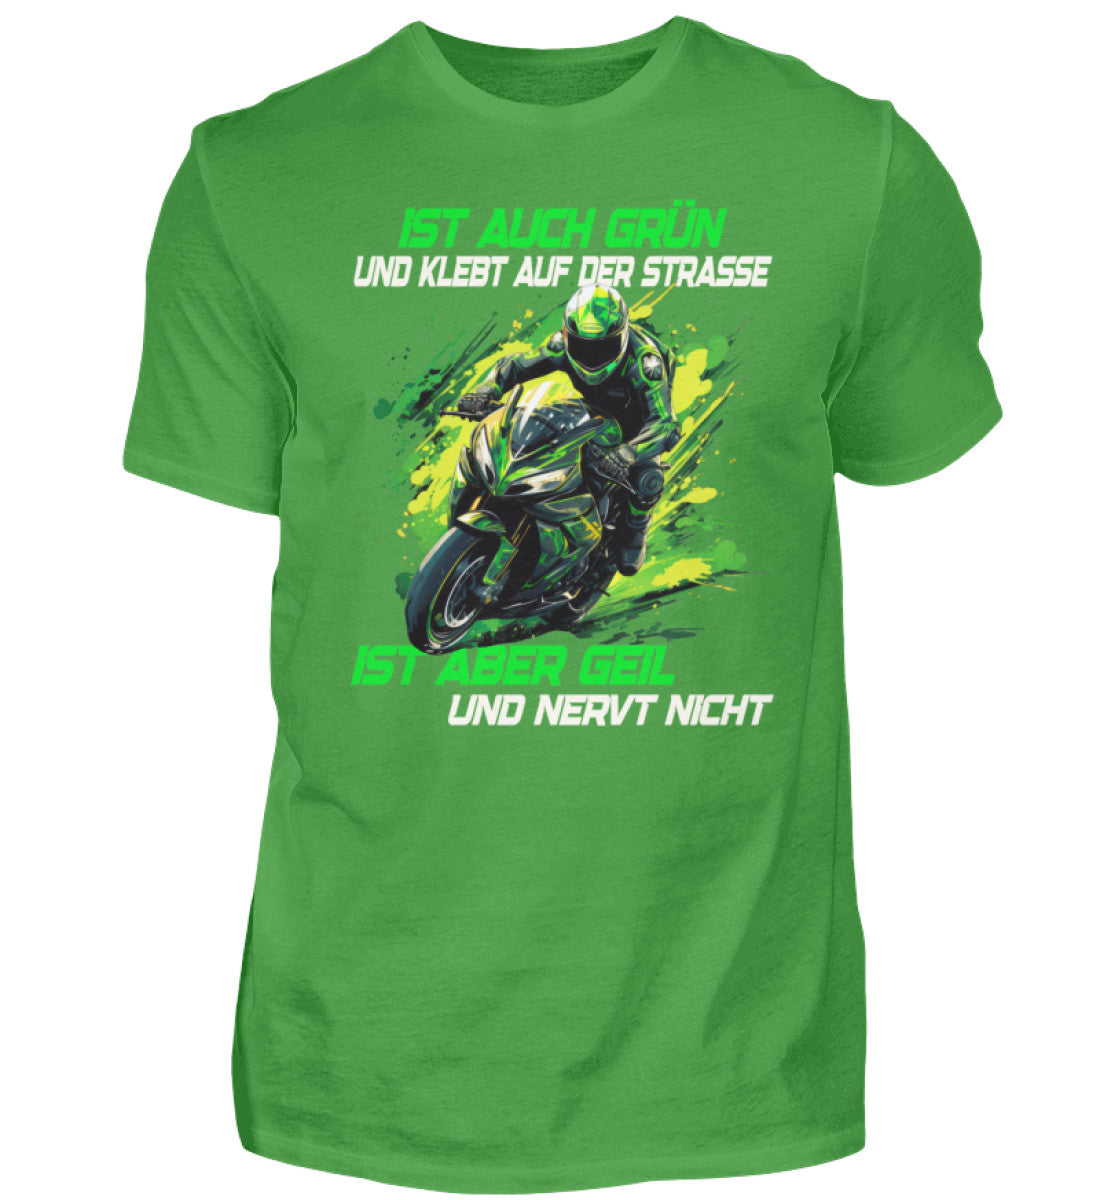 Ein T-Shirt für Motorradfahrer von Wingbikers mit dem Aufdruck, Ist auch grün und klebt auf der Straße, ist aber geil und nervt nicht, in grün.